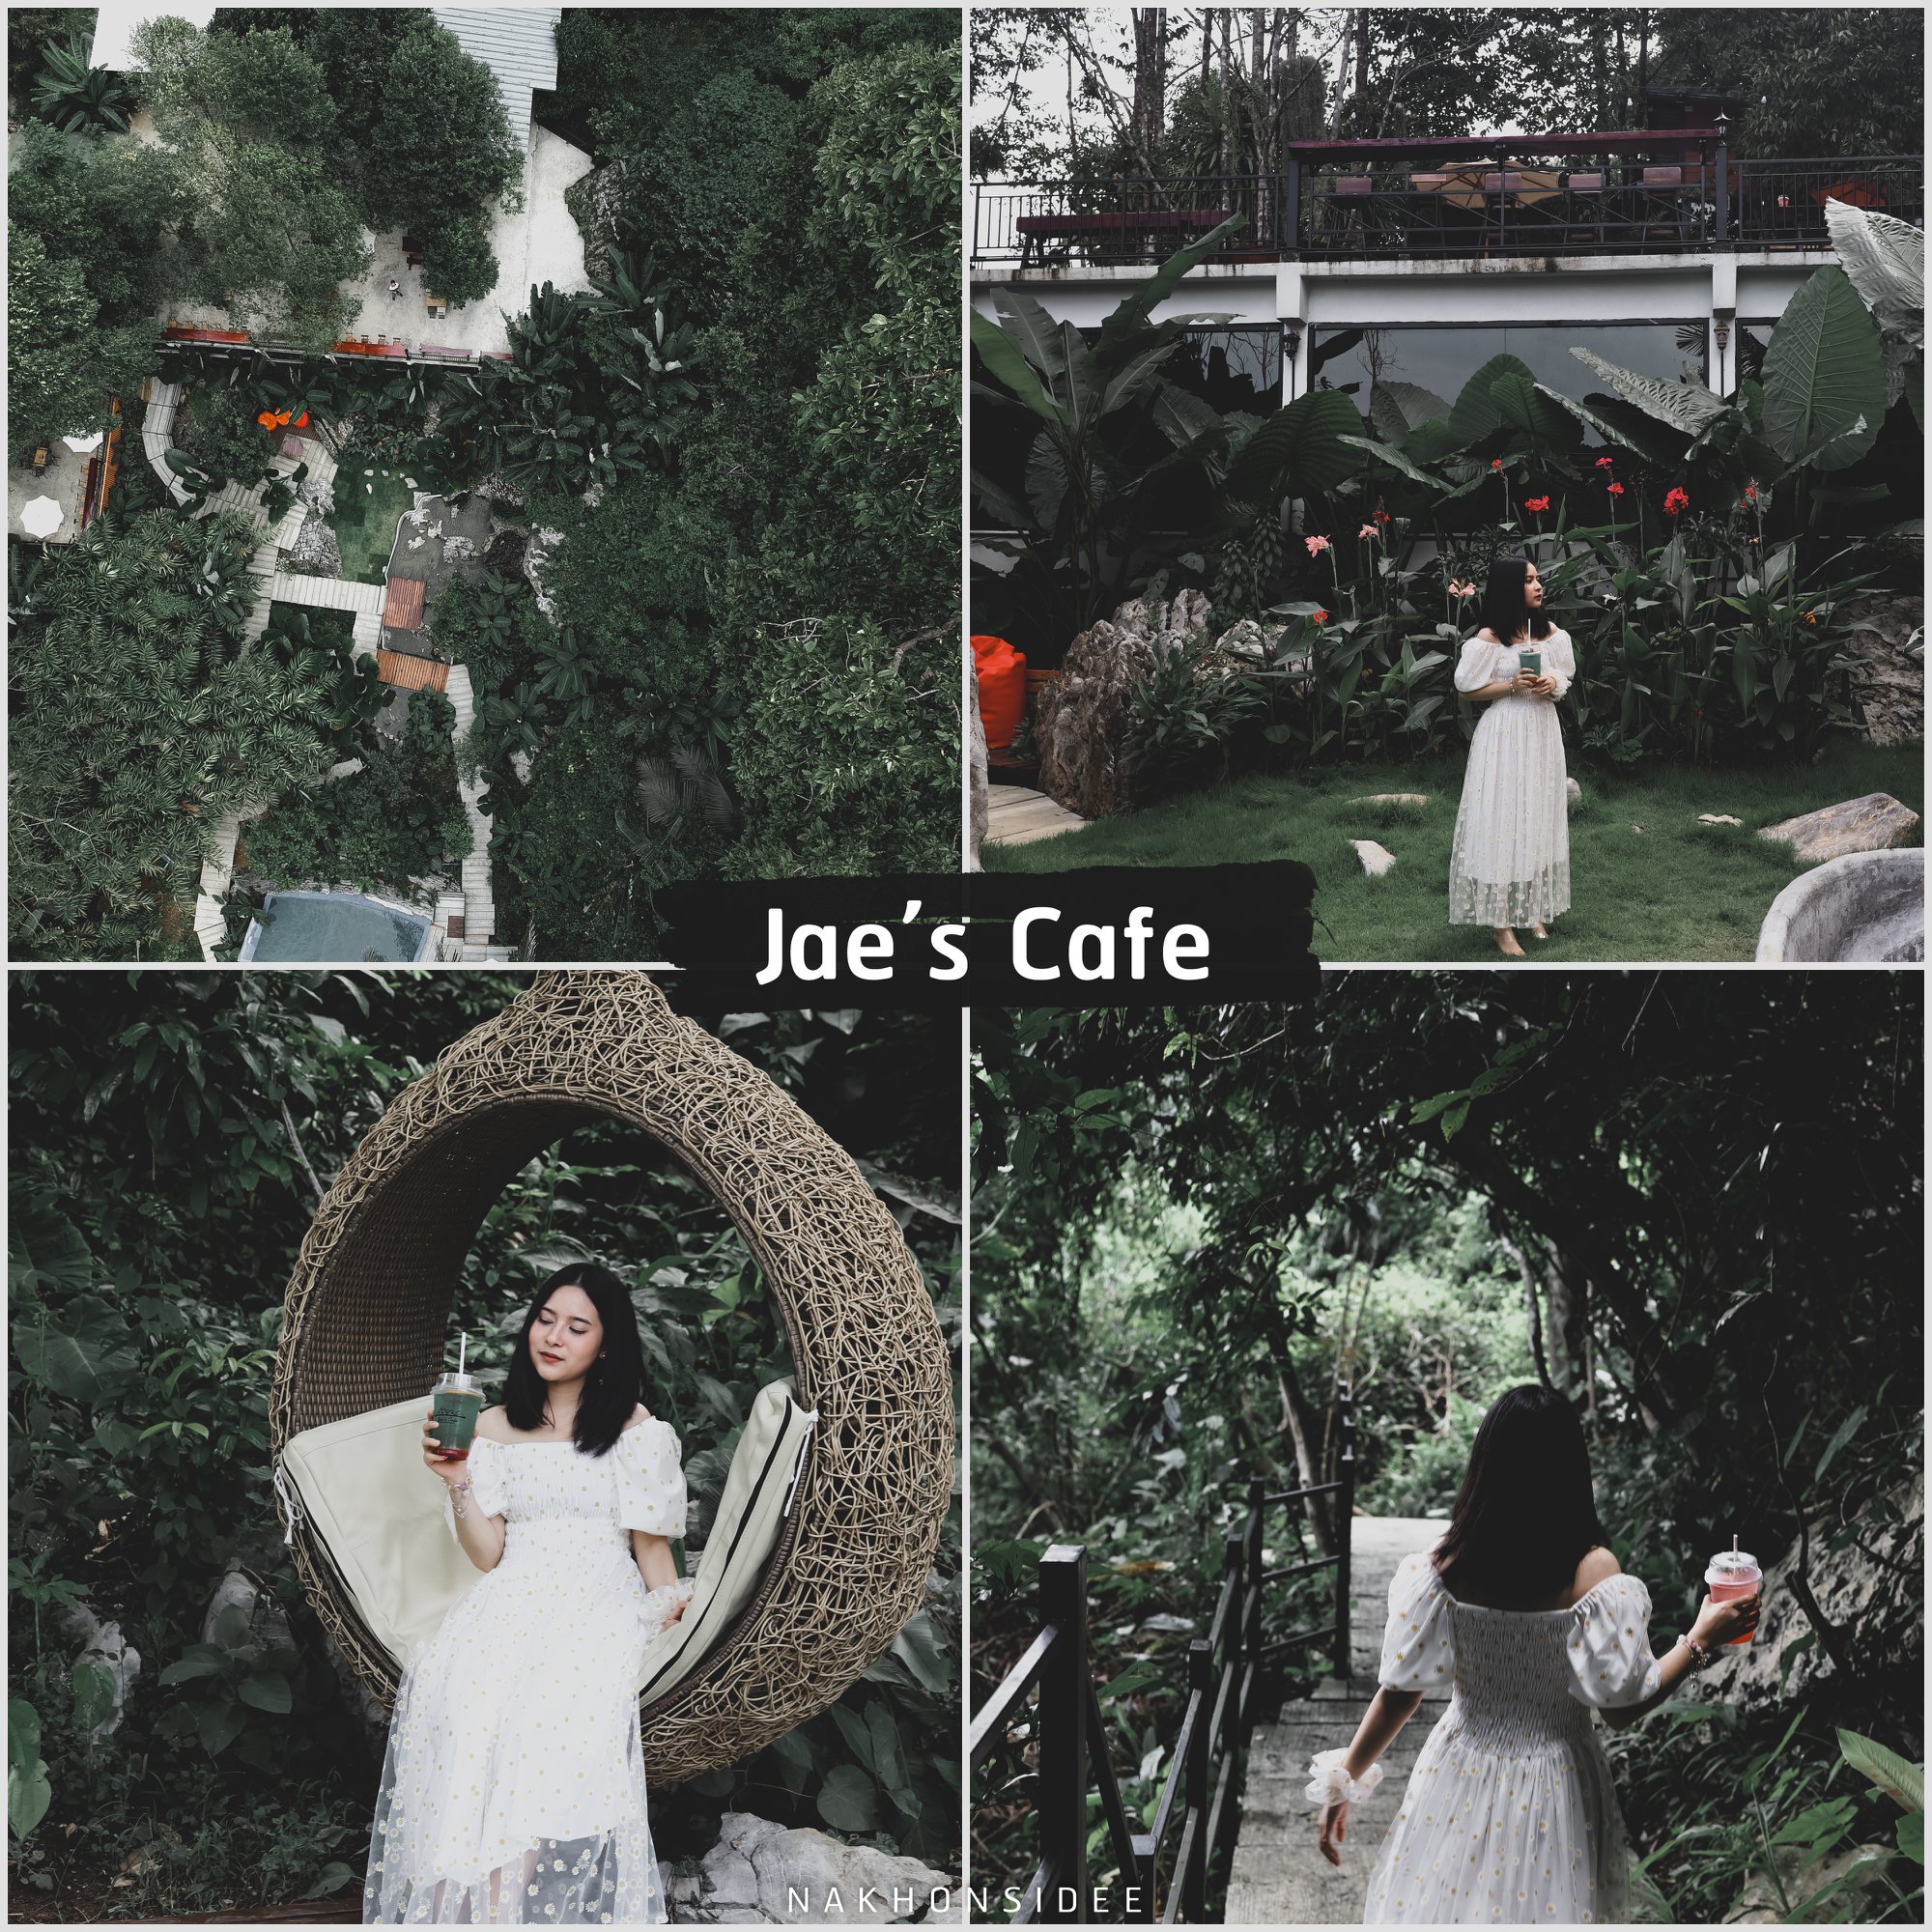  Jae-s-Cafe
คลิกที่นี่
 คาเฟ่สวย,วิวหลักล้าน,นครศรีธรรมราช,รวมcafe,คาเฟ่,ร้านอาหาร,ร้านกาแฟ,ภูเขา